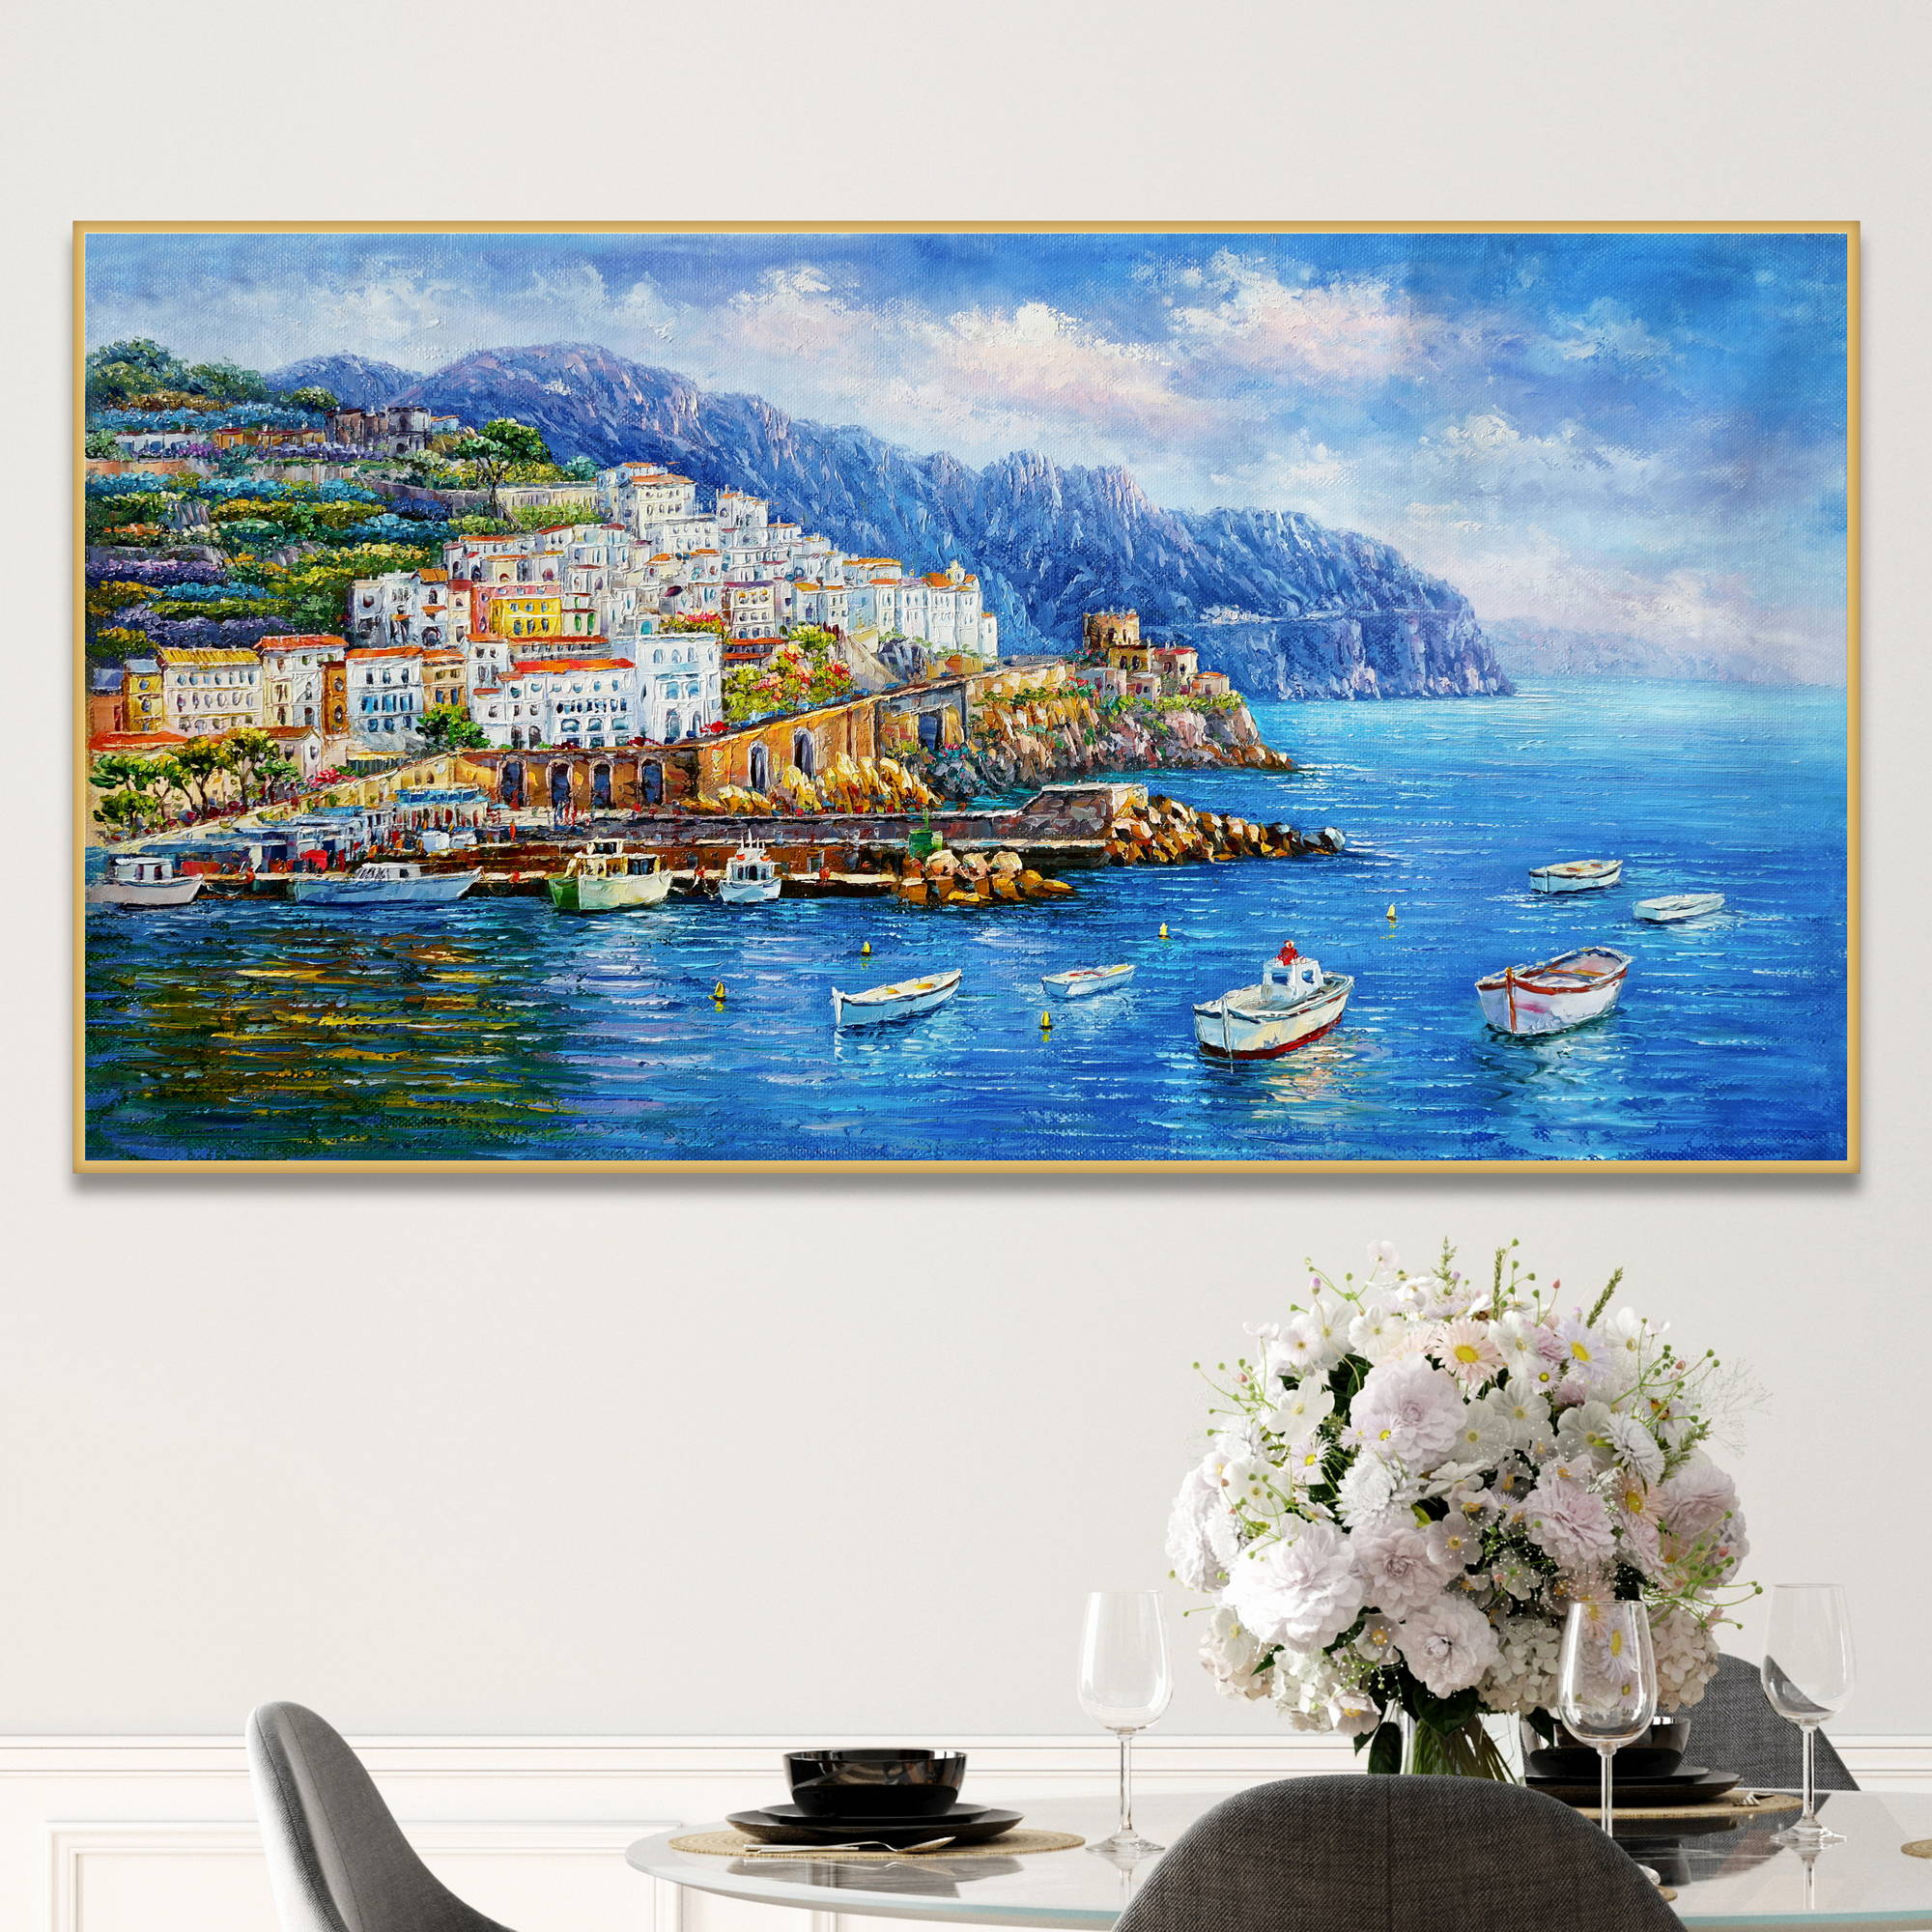 Dipinto del pittoresco borgo di Amalfi con le sue case arroccate